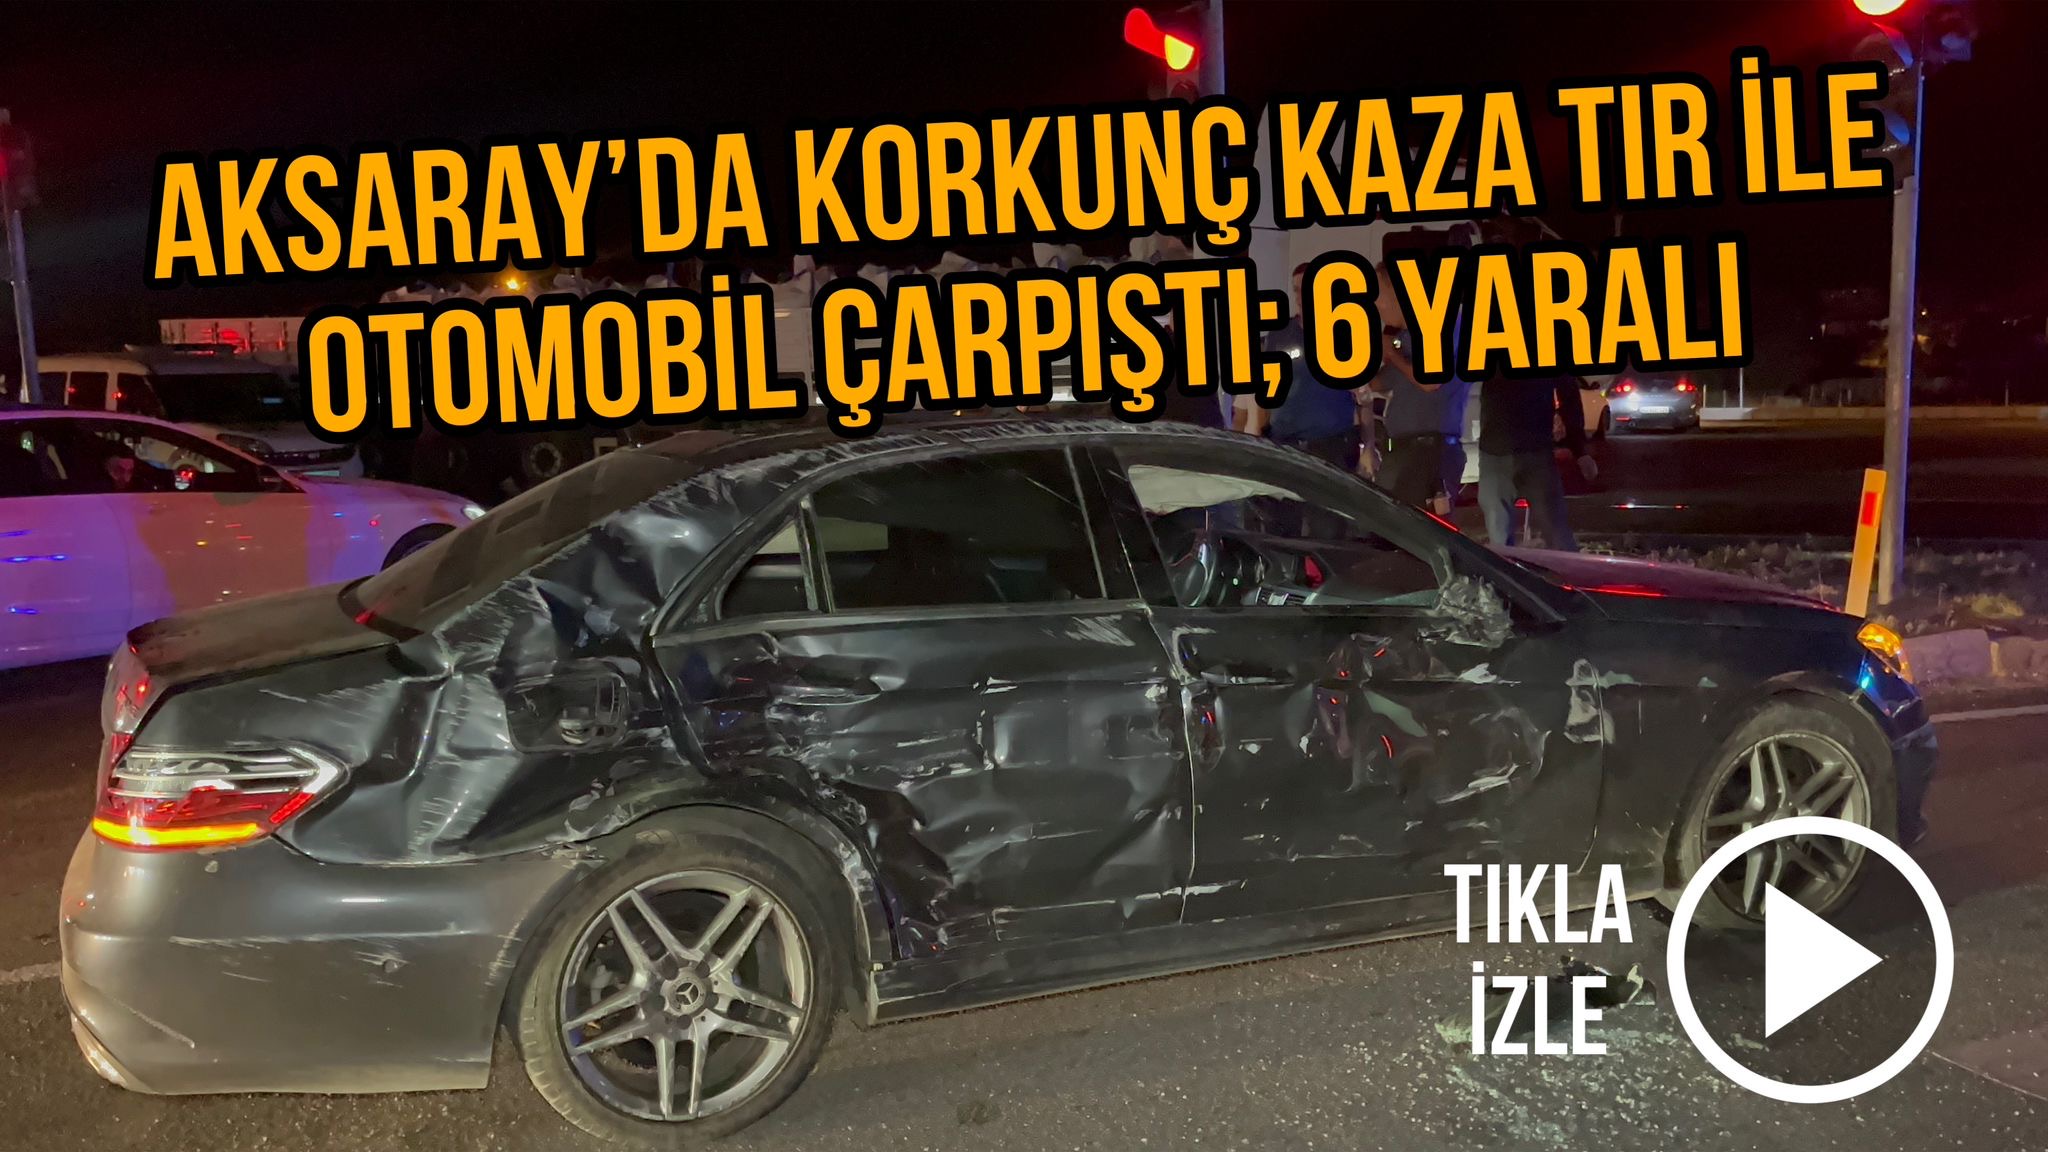 Aksaray’da Korkunç kaza Tır ile otomobil çarpıştı; 6 Yaralı